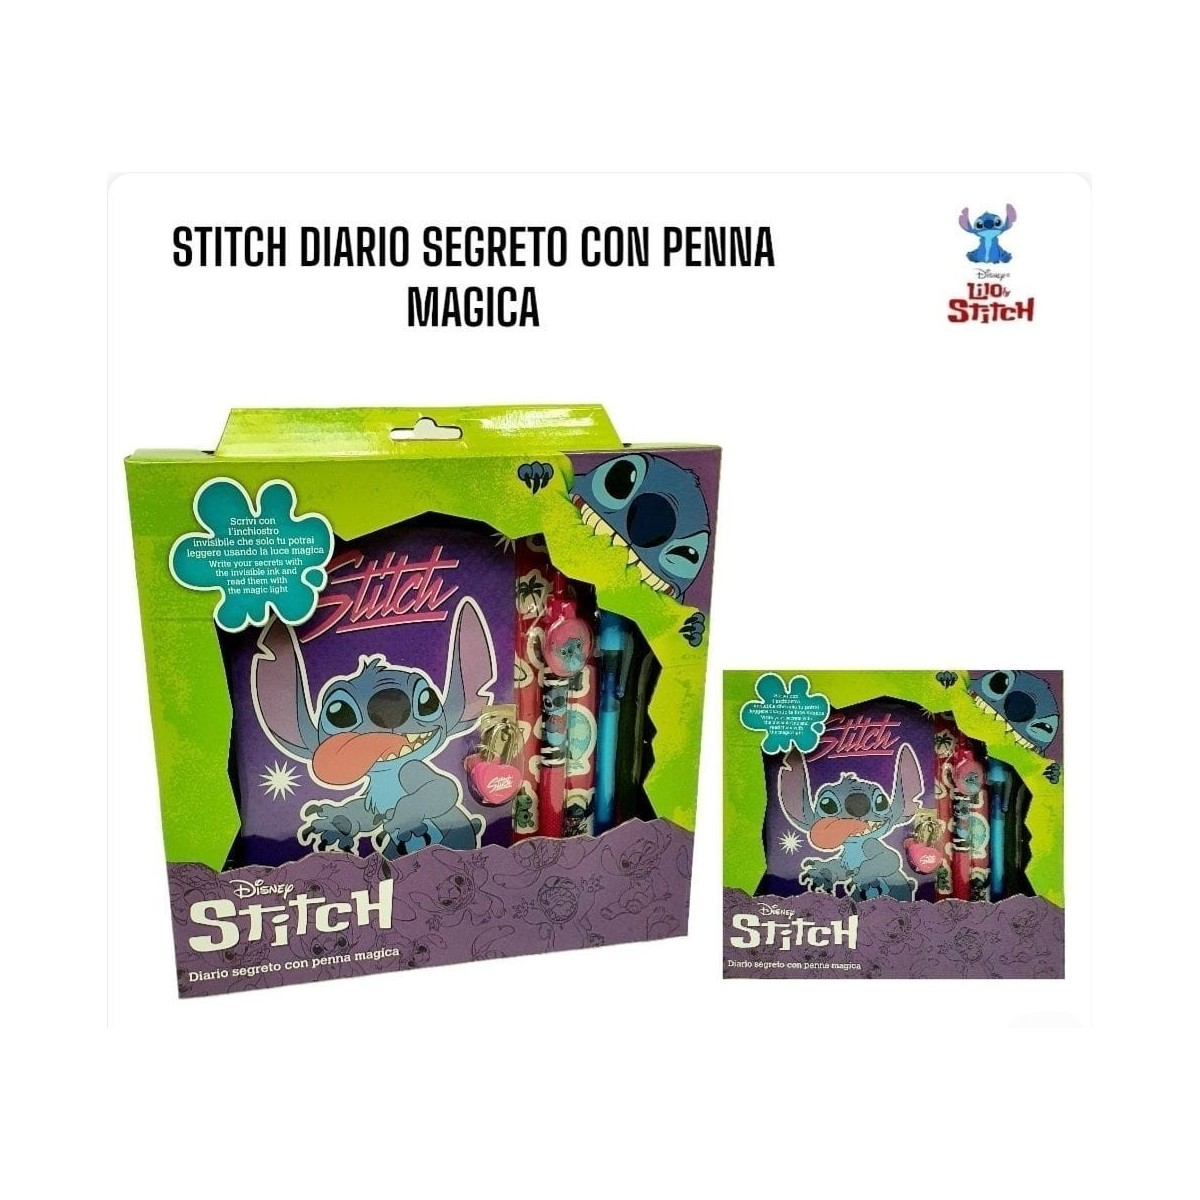 Stitch Diario segreto con penna magica - Futurart - ZON98900